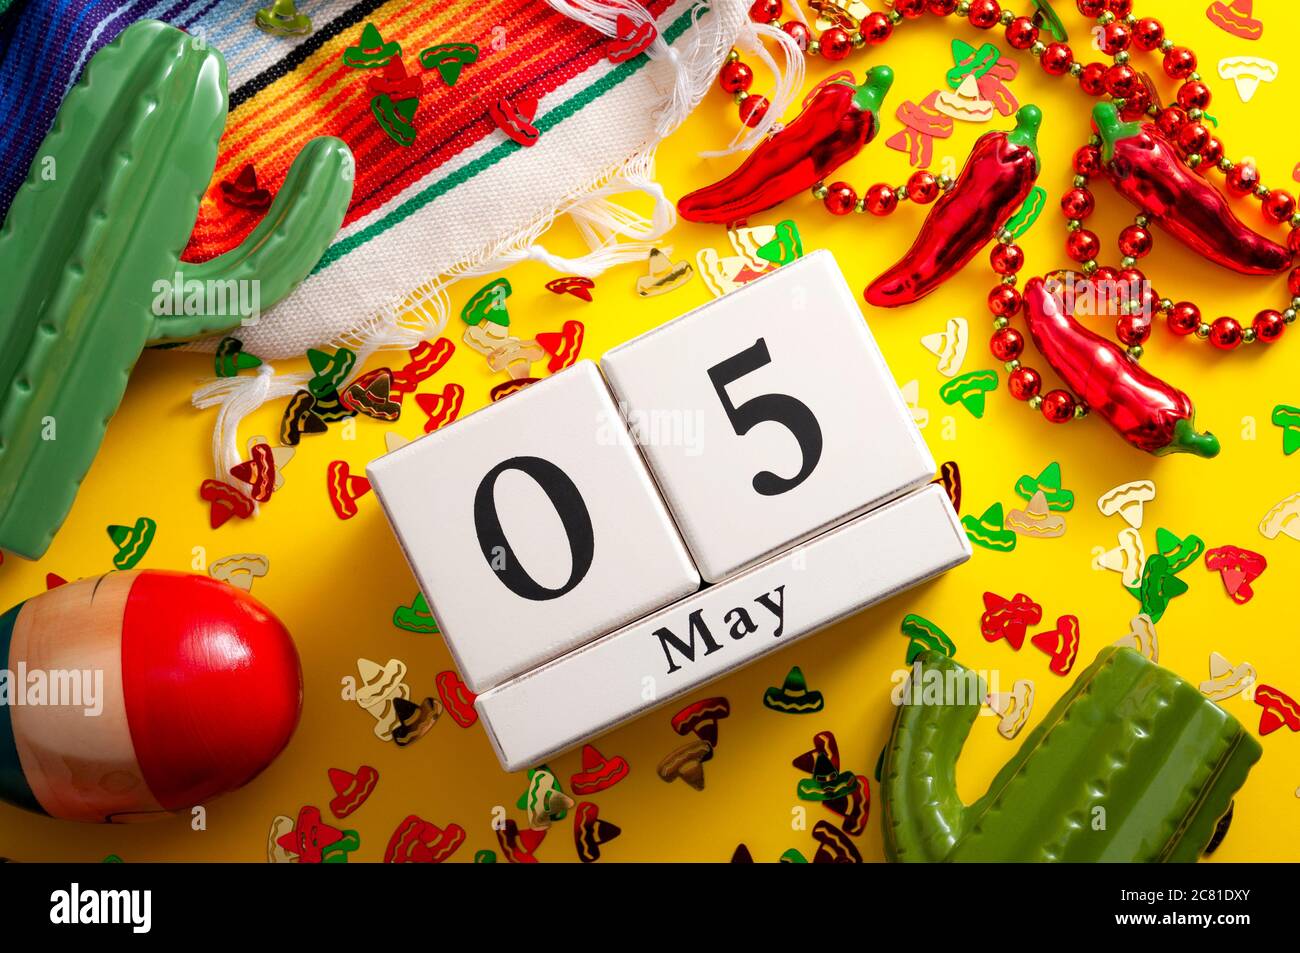 Fête mexicaine et concept de fête Cinco de Mayo avec calendrier fixé le 5 mai, collier de piment jalapeno, maracas, cactus et tapis traditionnel couverts Photo Stock - Alamy